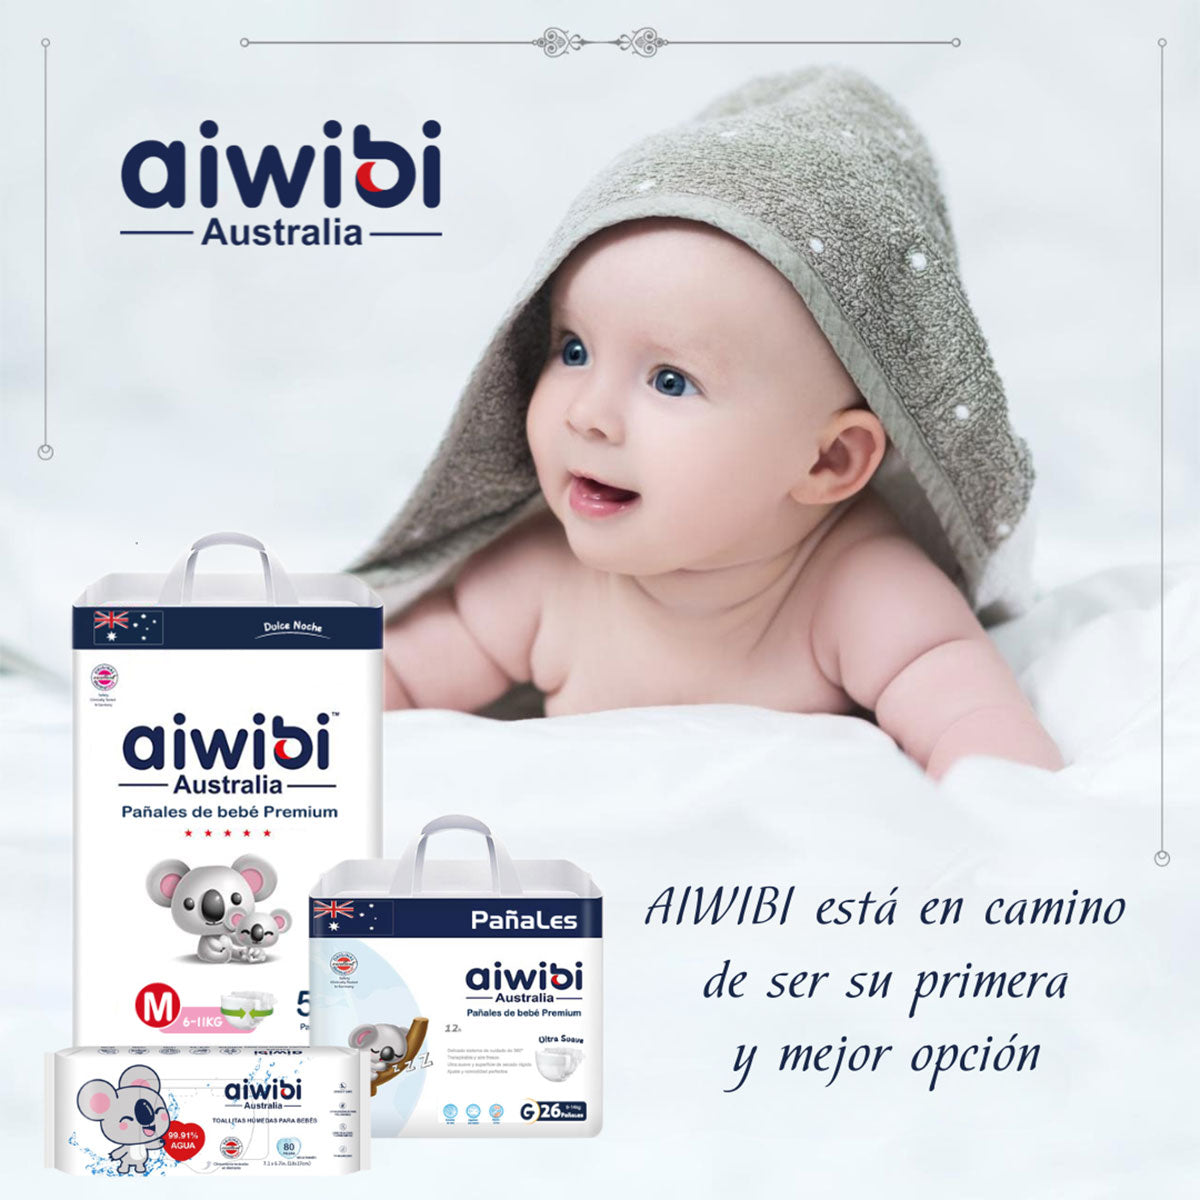 Pañales Aiwibi Premium Dulce Noche G (48 unidades) - 🇦🇺 Producto Australiano